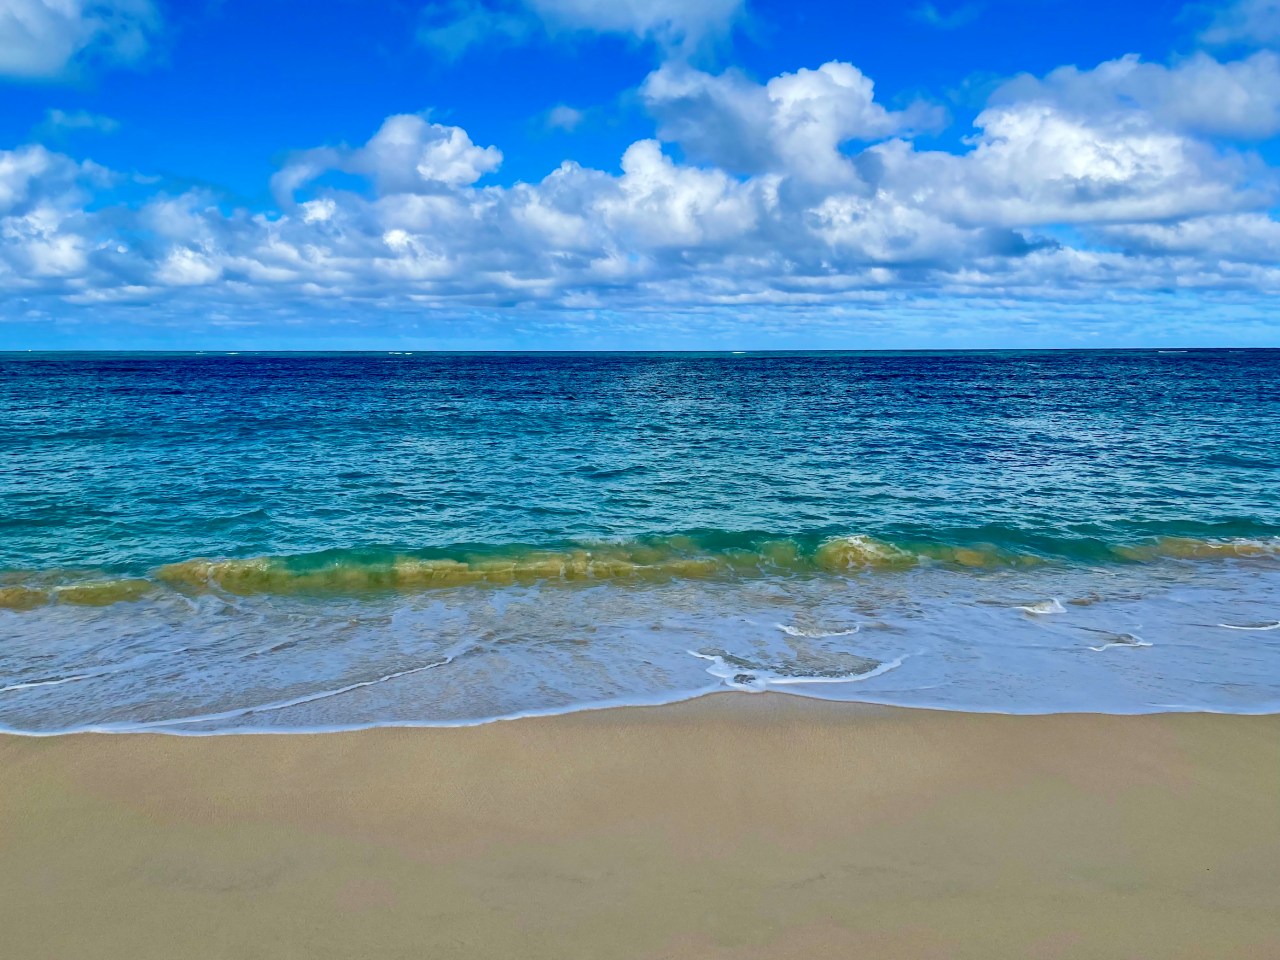 Calm clear blue ocean on a beach